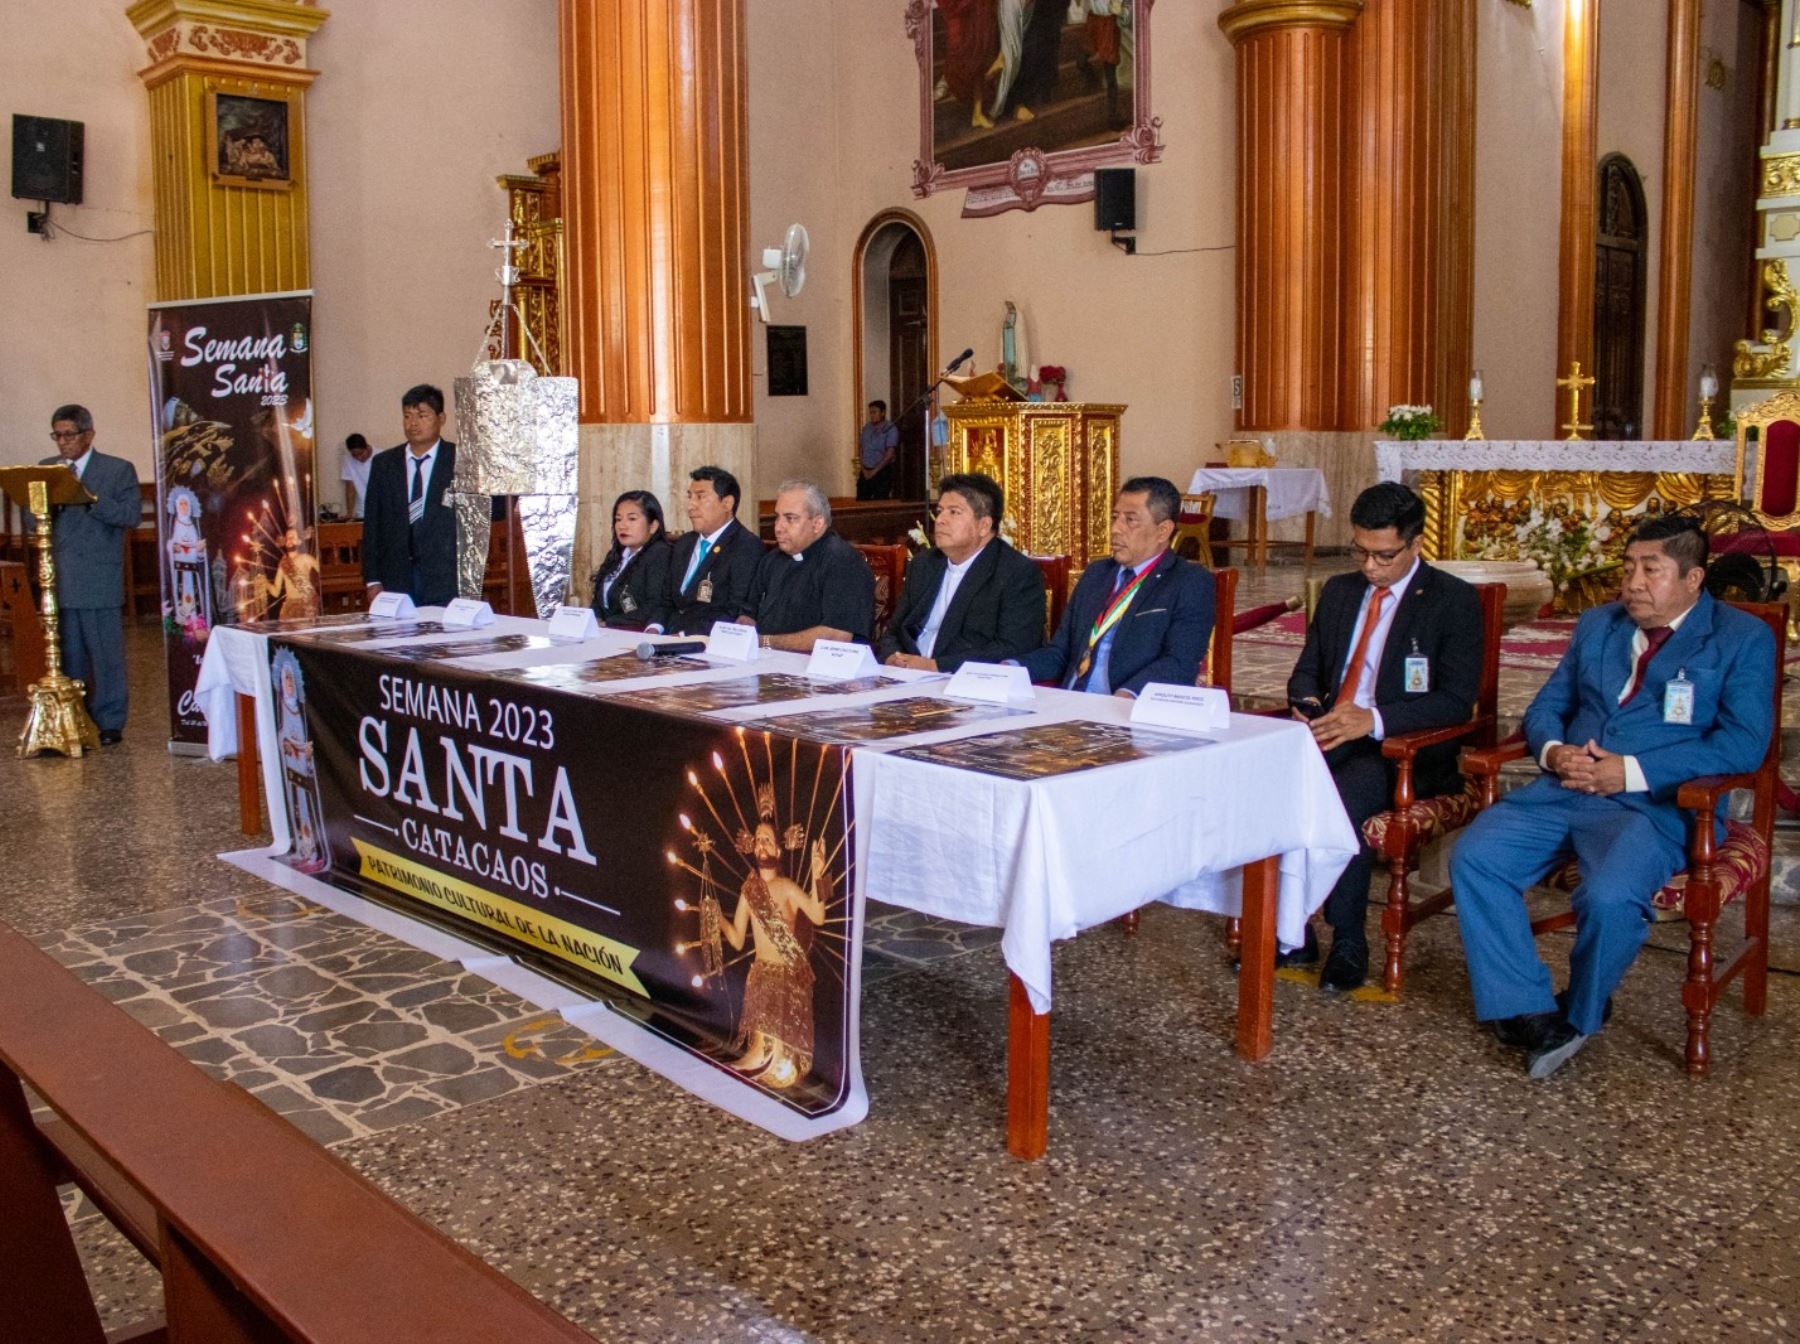 El distrito de Catacaos, región Piura, presentó su programa de actividades de Semana Santa, una celebración reconocida como Patrimonio Cultural de la Nación. Foto: ANDINA/difusión.